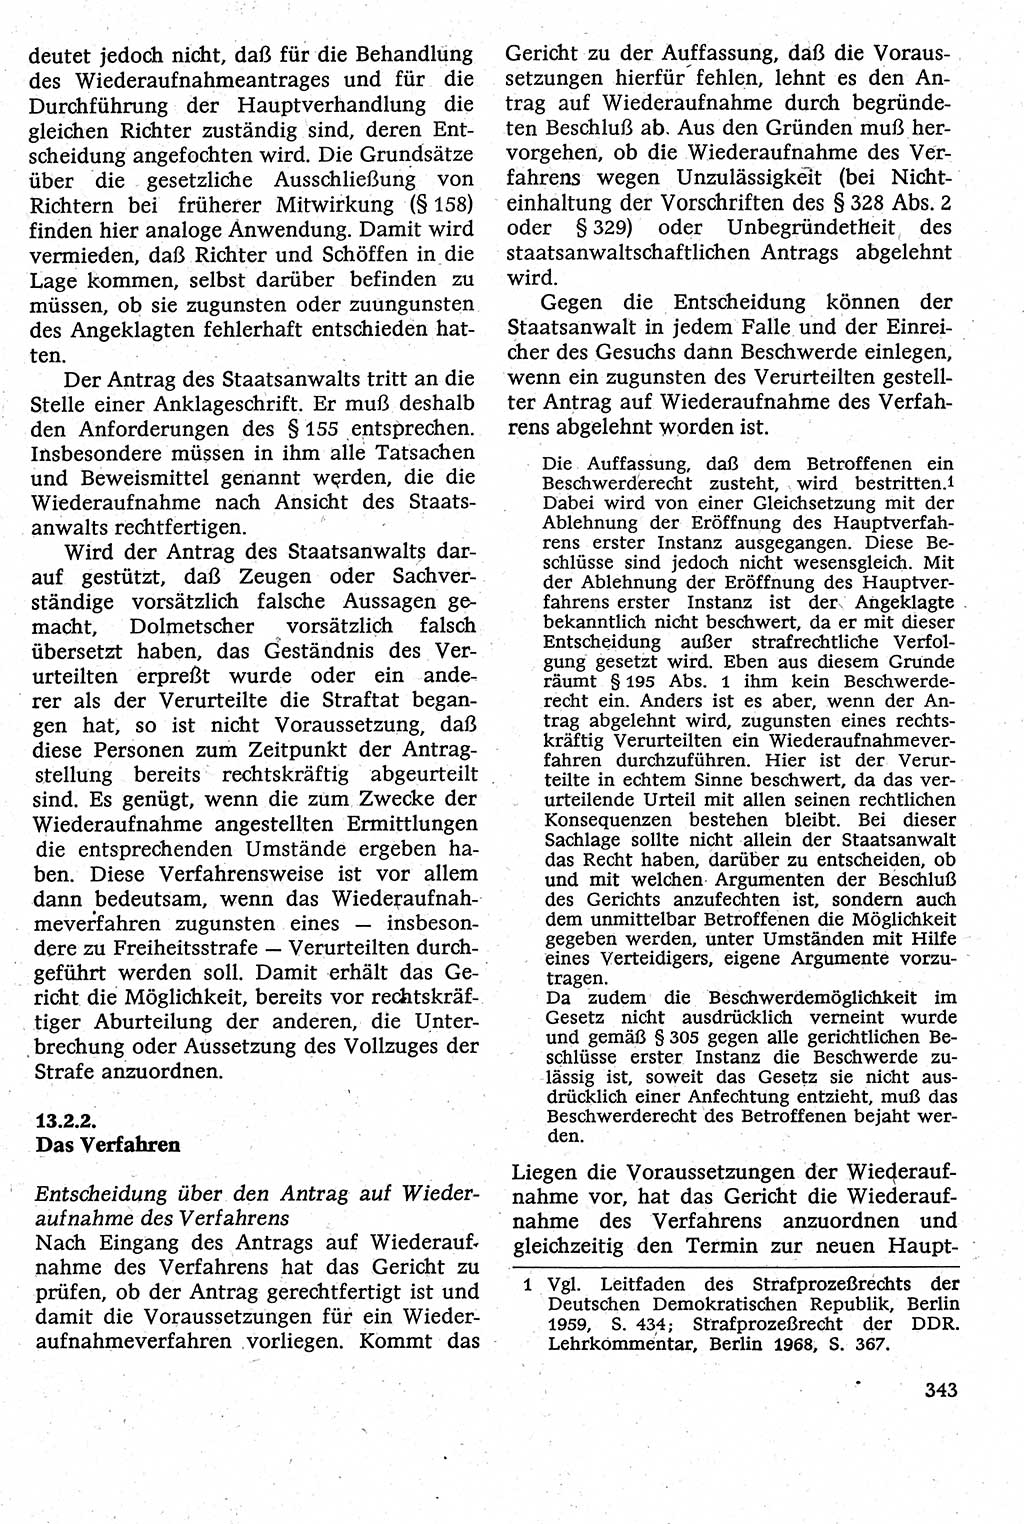 Strafverfahrensrecht [Deutsche Demokratische Republik (DDR)], Lehrbuch 1982, Seite 343 (Strafverf.-R. DDR Lb. 1982, S. 343)